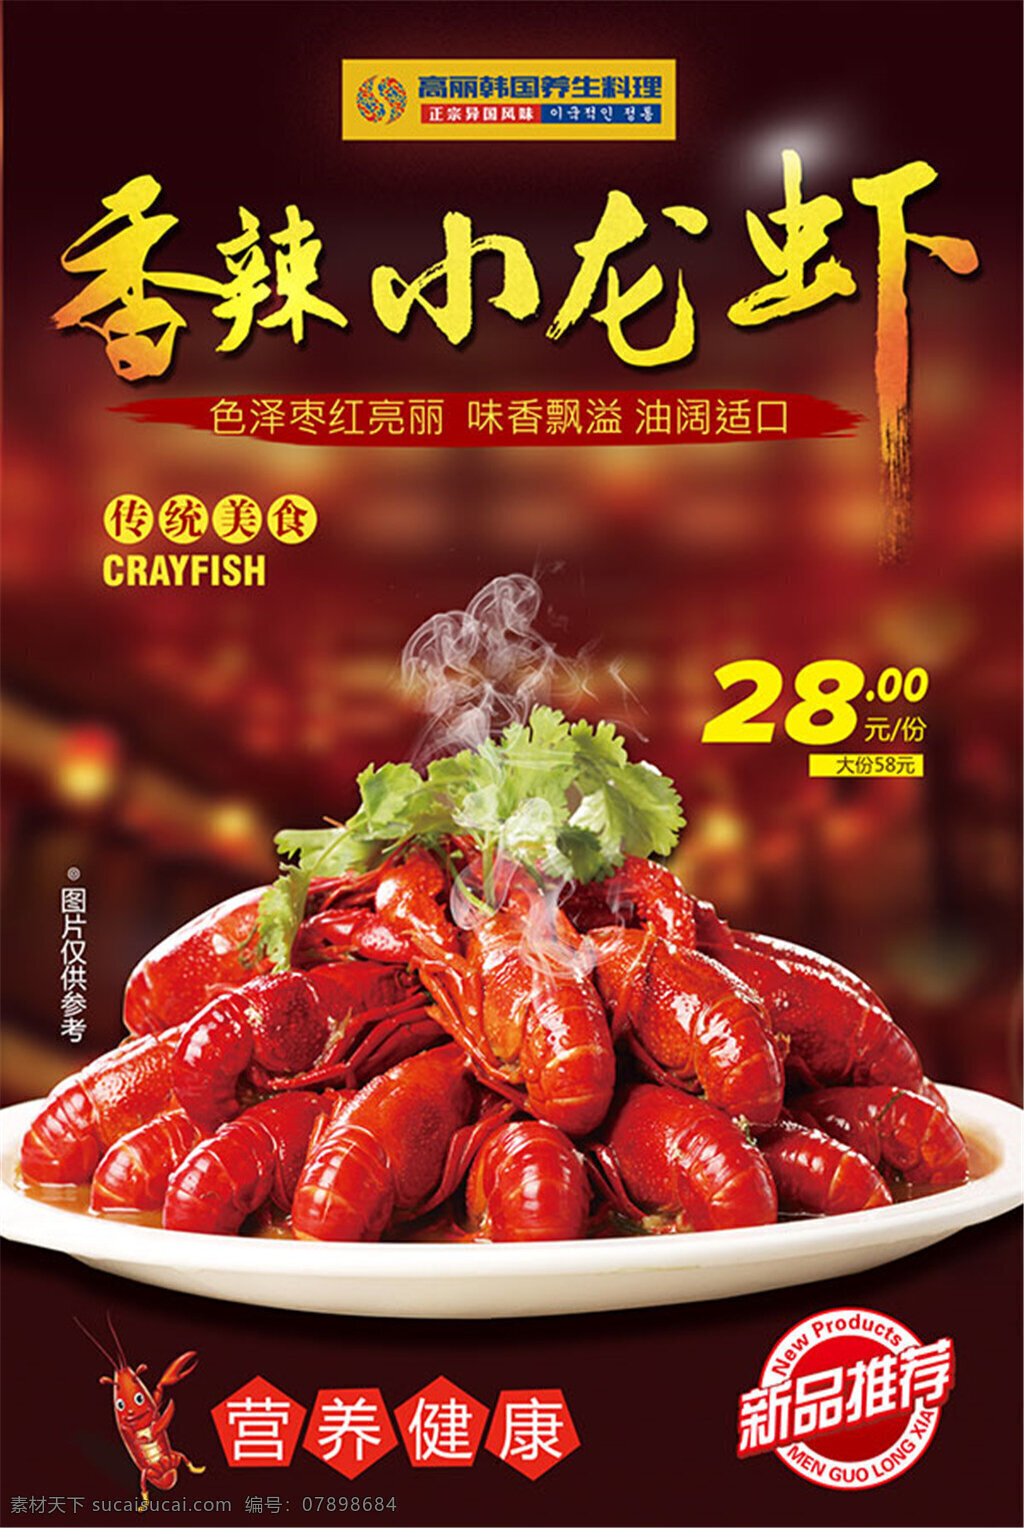 香辣 小 龙虾 海报 传统美食 韩国料理 火锅 健康 美食 小龙虾 新品推荐 营养 黑色